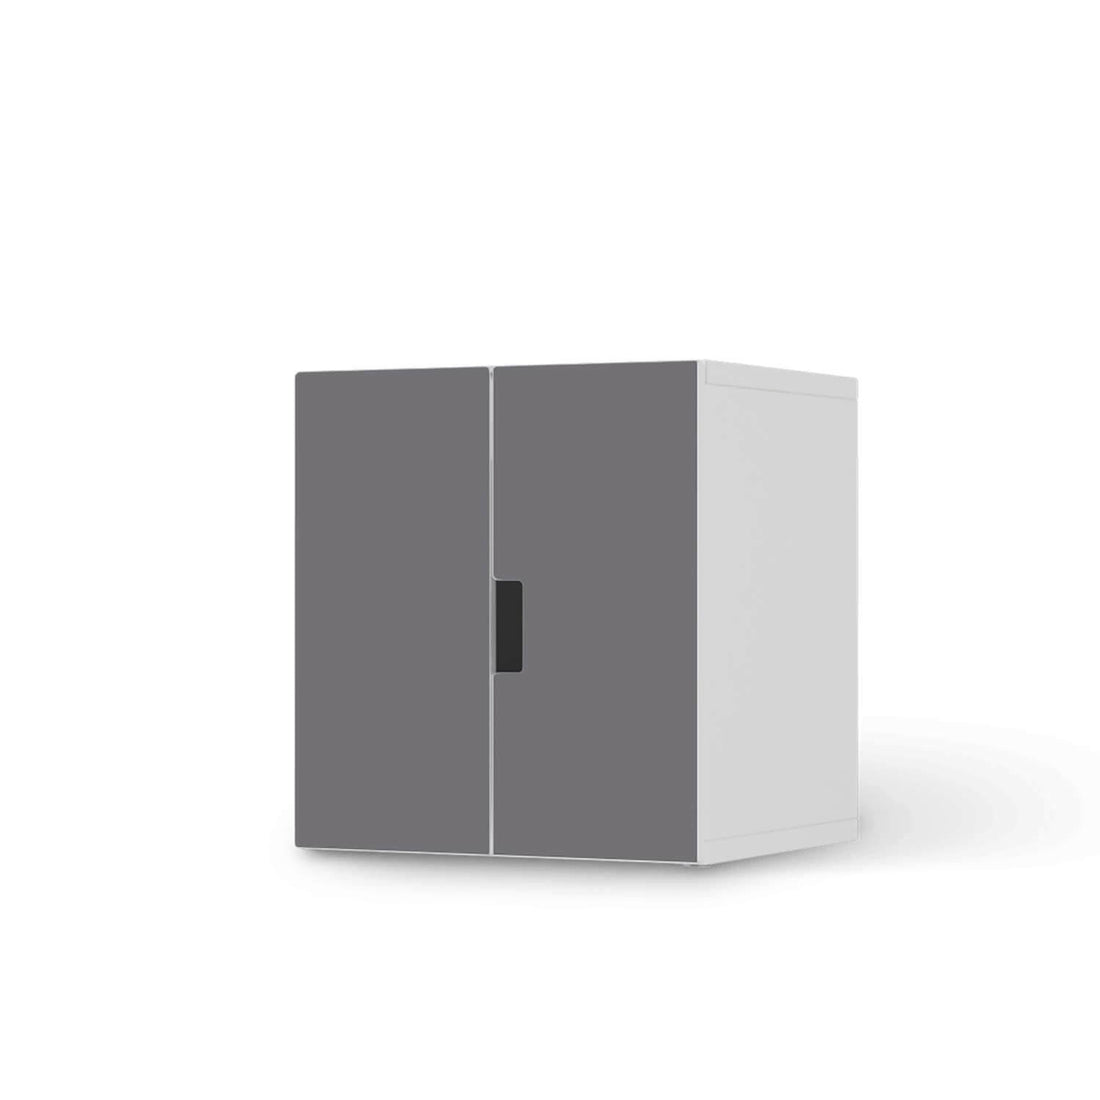 Selbstklebende Folie Grau Light - IKEA Stuva Schrank - 2 kleine Türen  - weiss